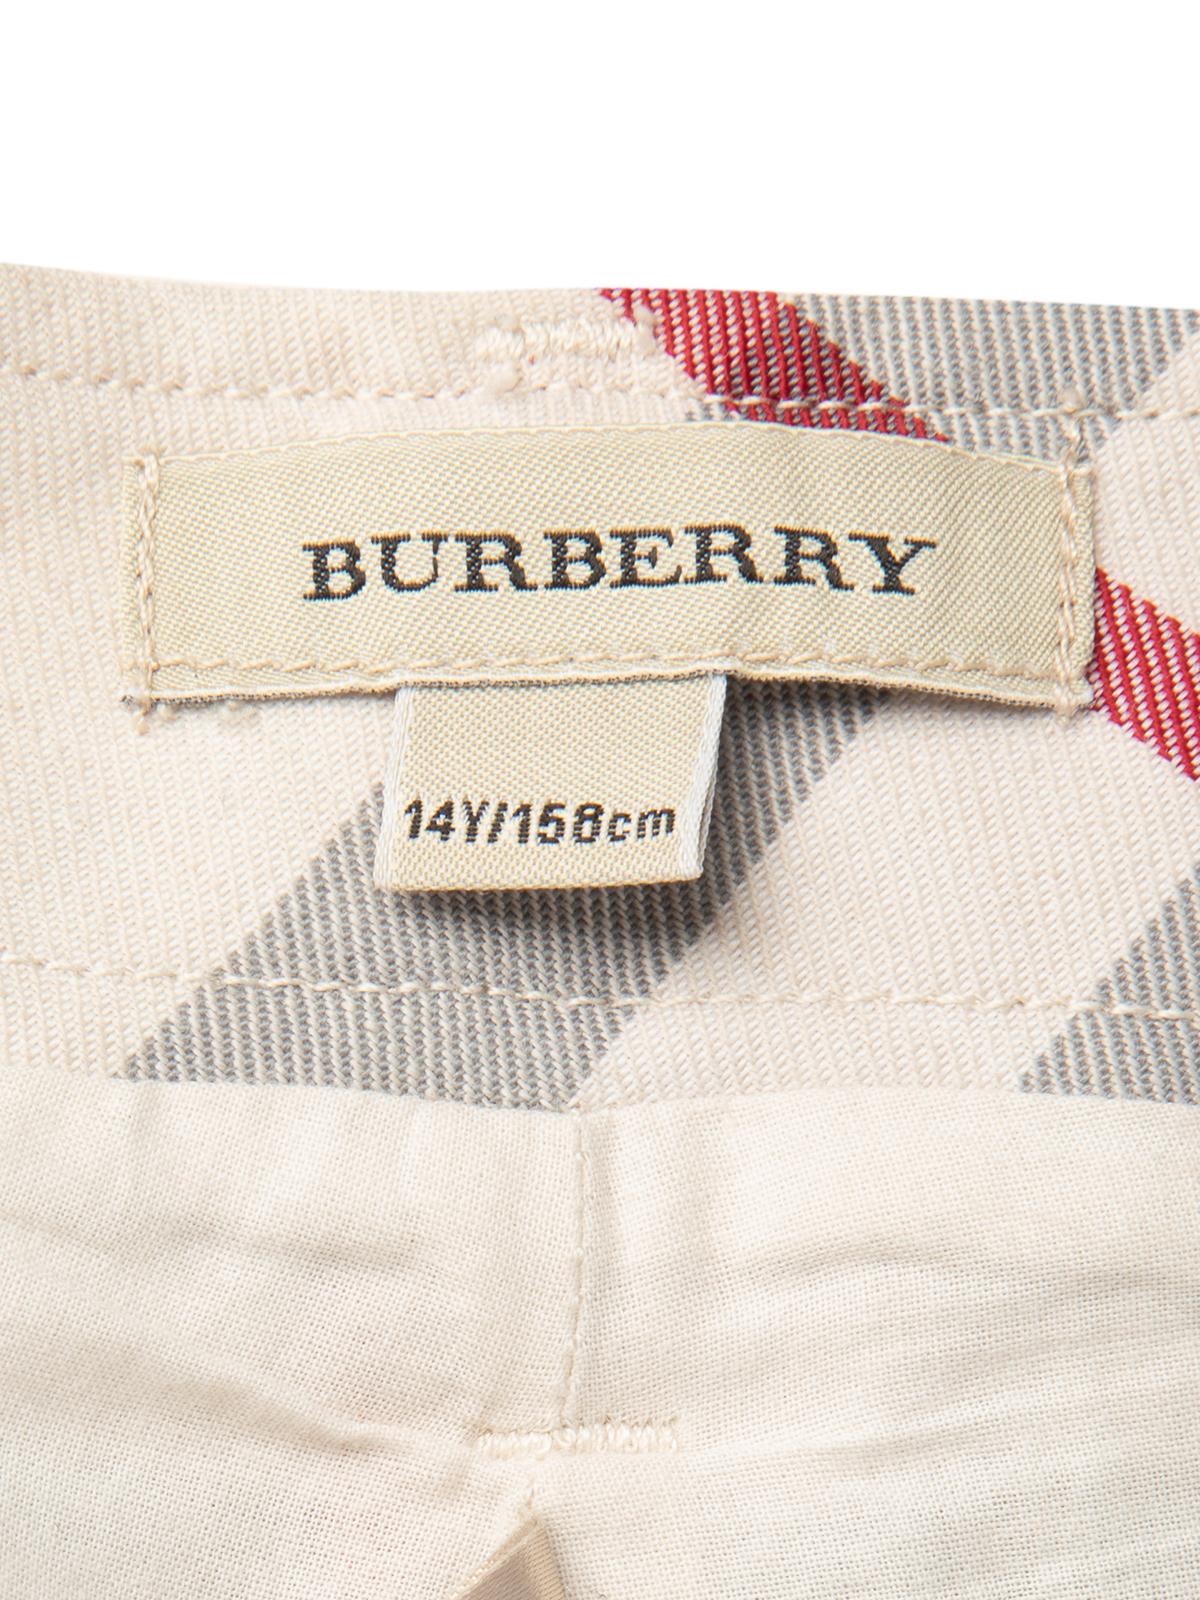 Pre-Loved Burberry Women's Monogram shorts 1